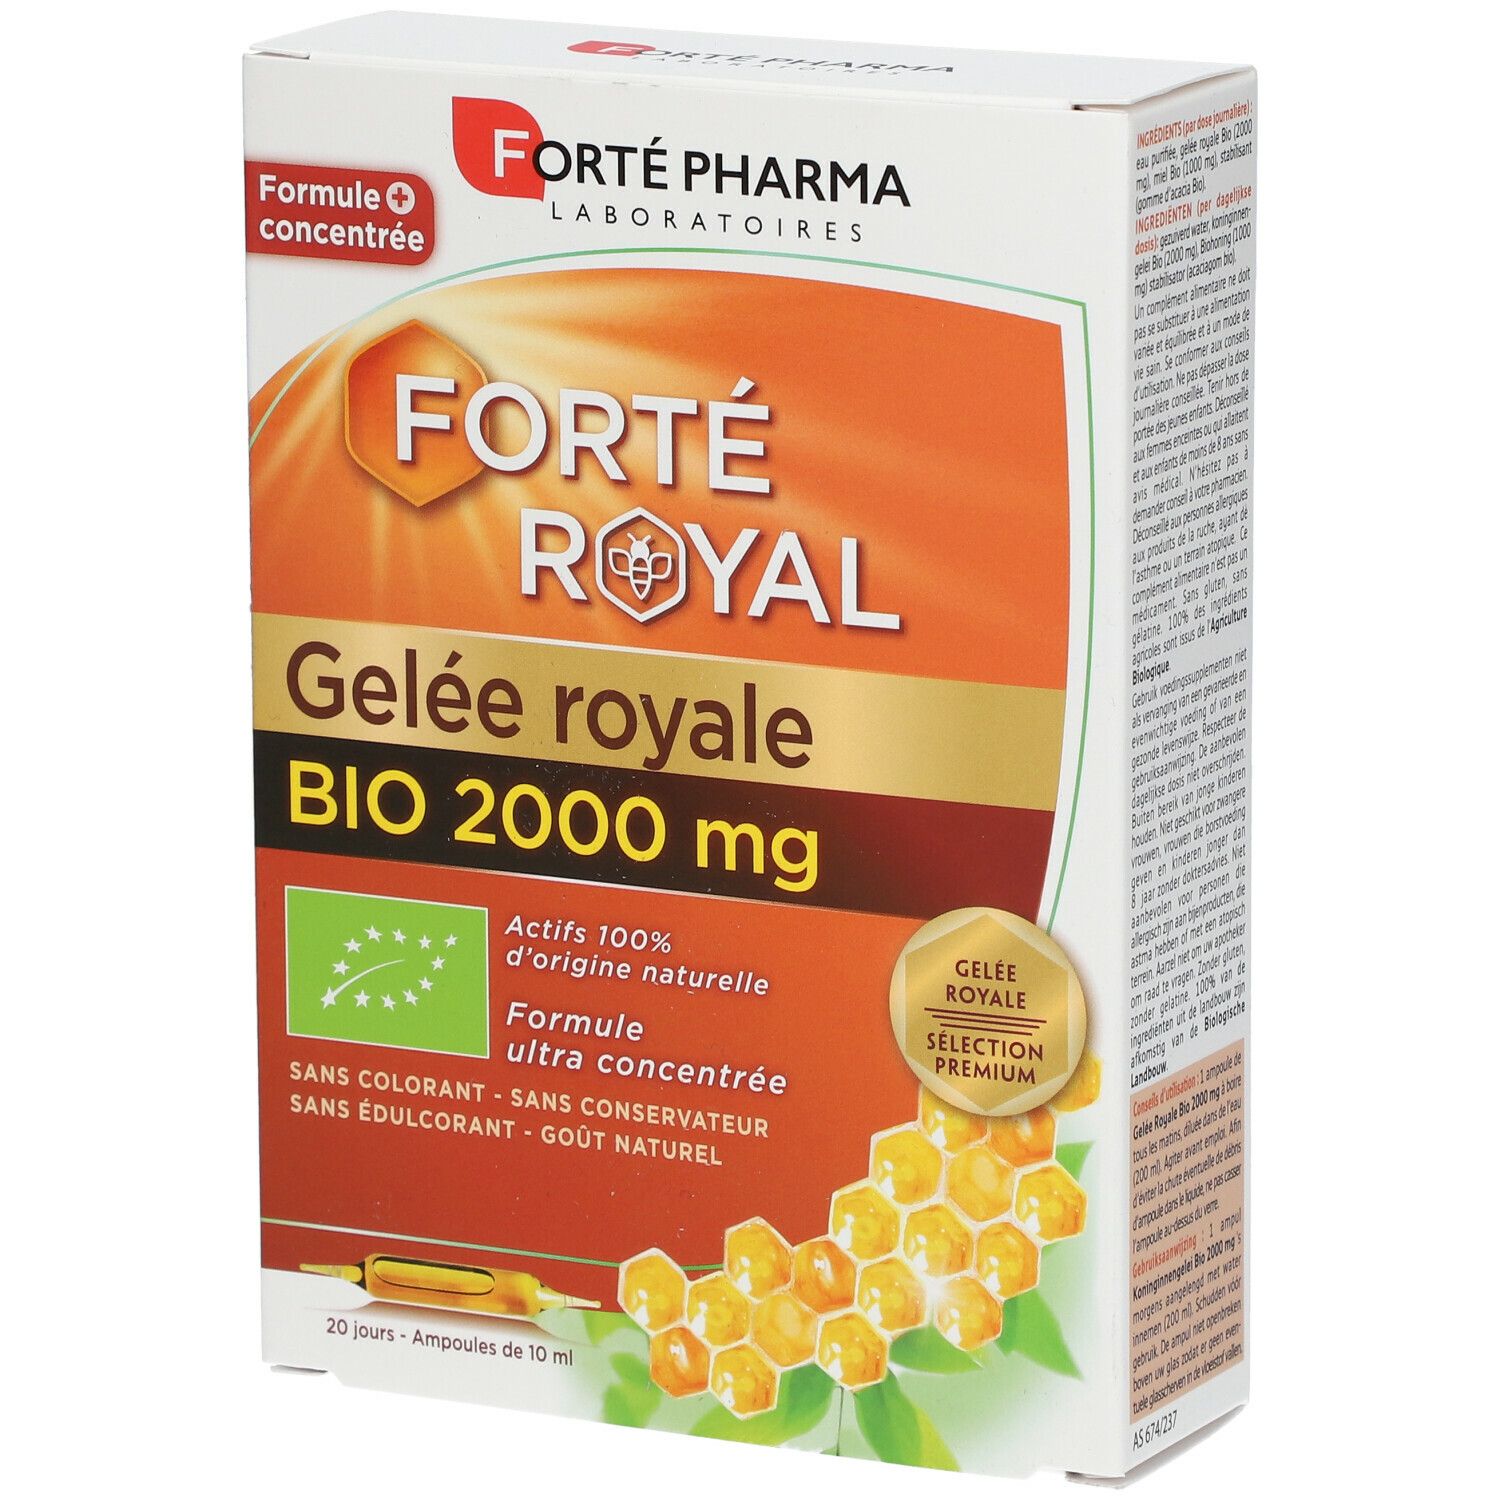 Forte Pharma Forté Royal Bio 2000 mg